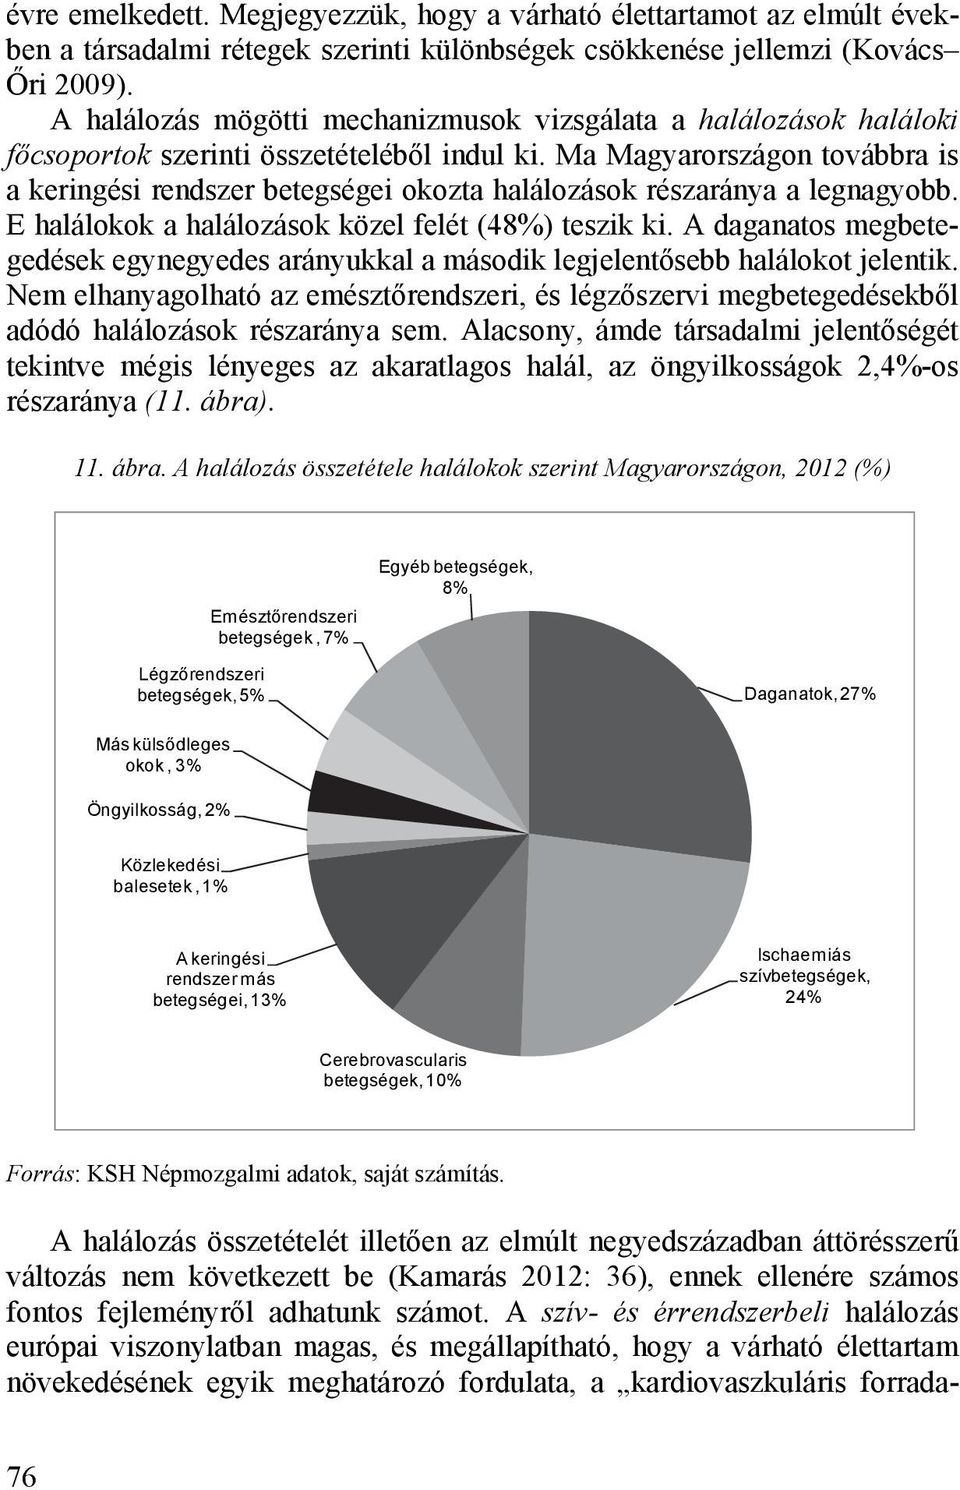 Ma Magyarországon továbbra is a keringési rendszer betegségei okozta halálozások részaránya a legnagyobb. E halálokok a halálozások közel felét (48%) teszik ki.